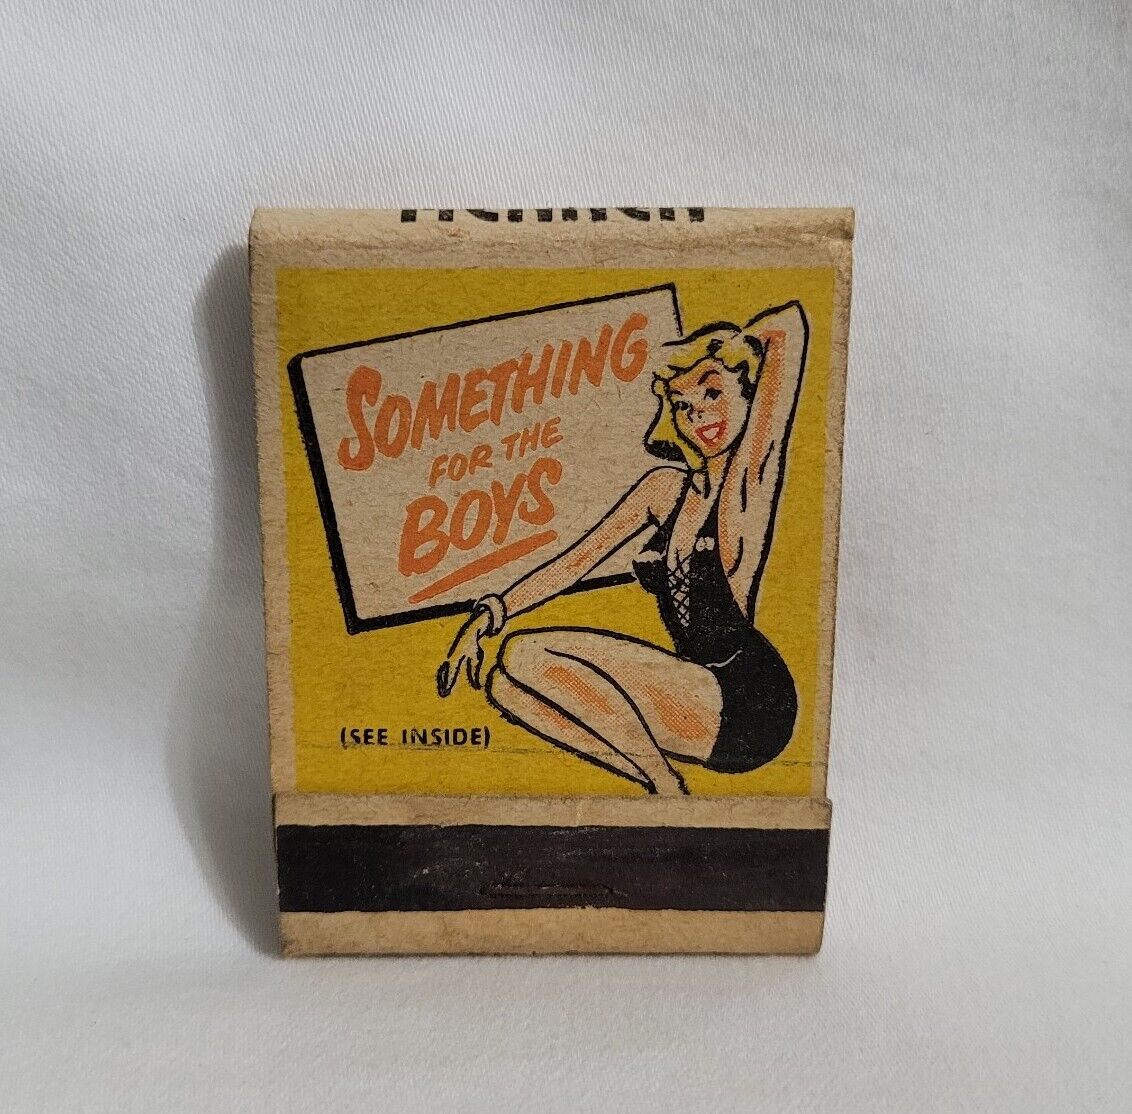 Vintage Mennen Shave Cream Something Boys Girlie Matchbook Cover Advertising